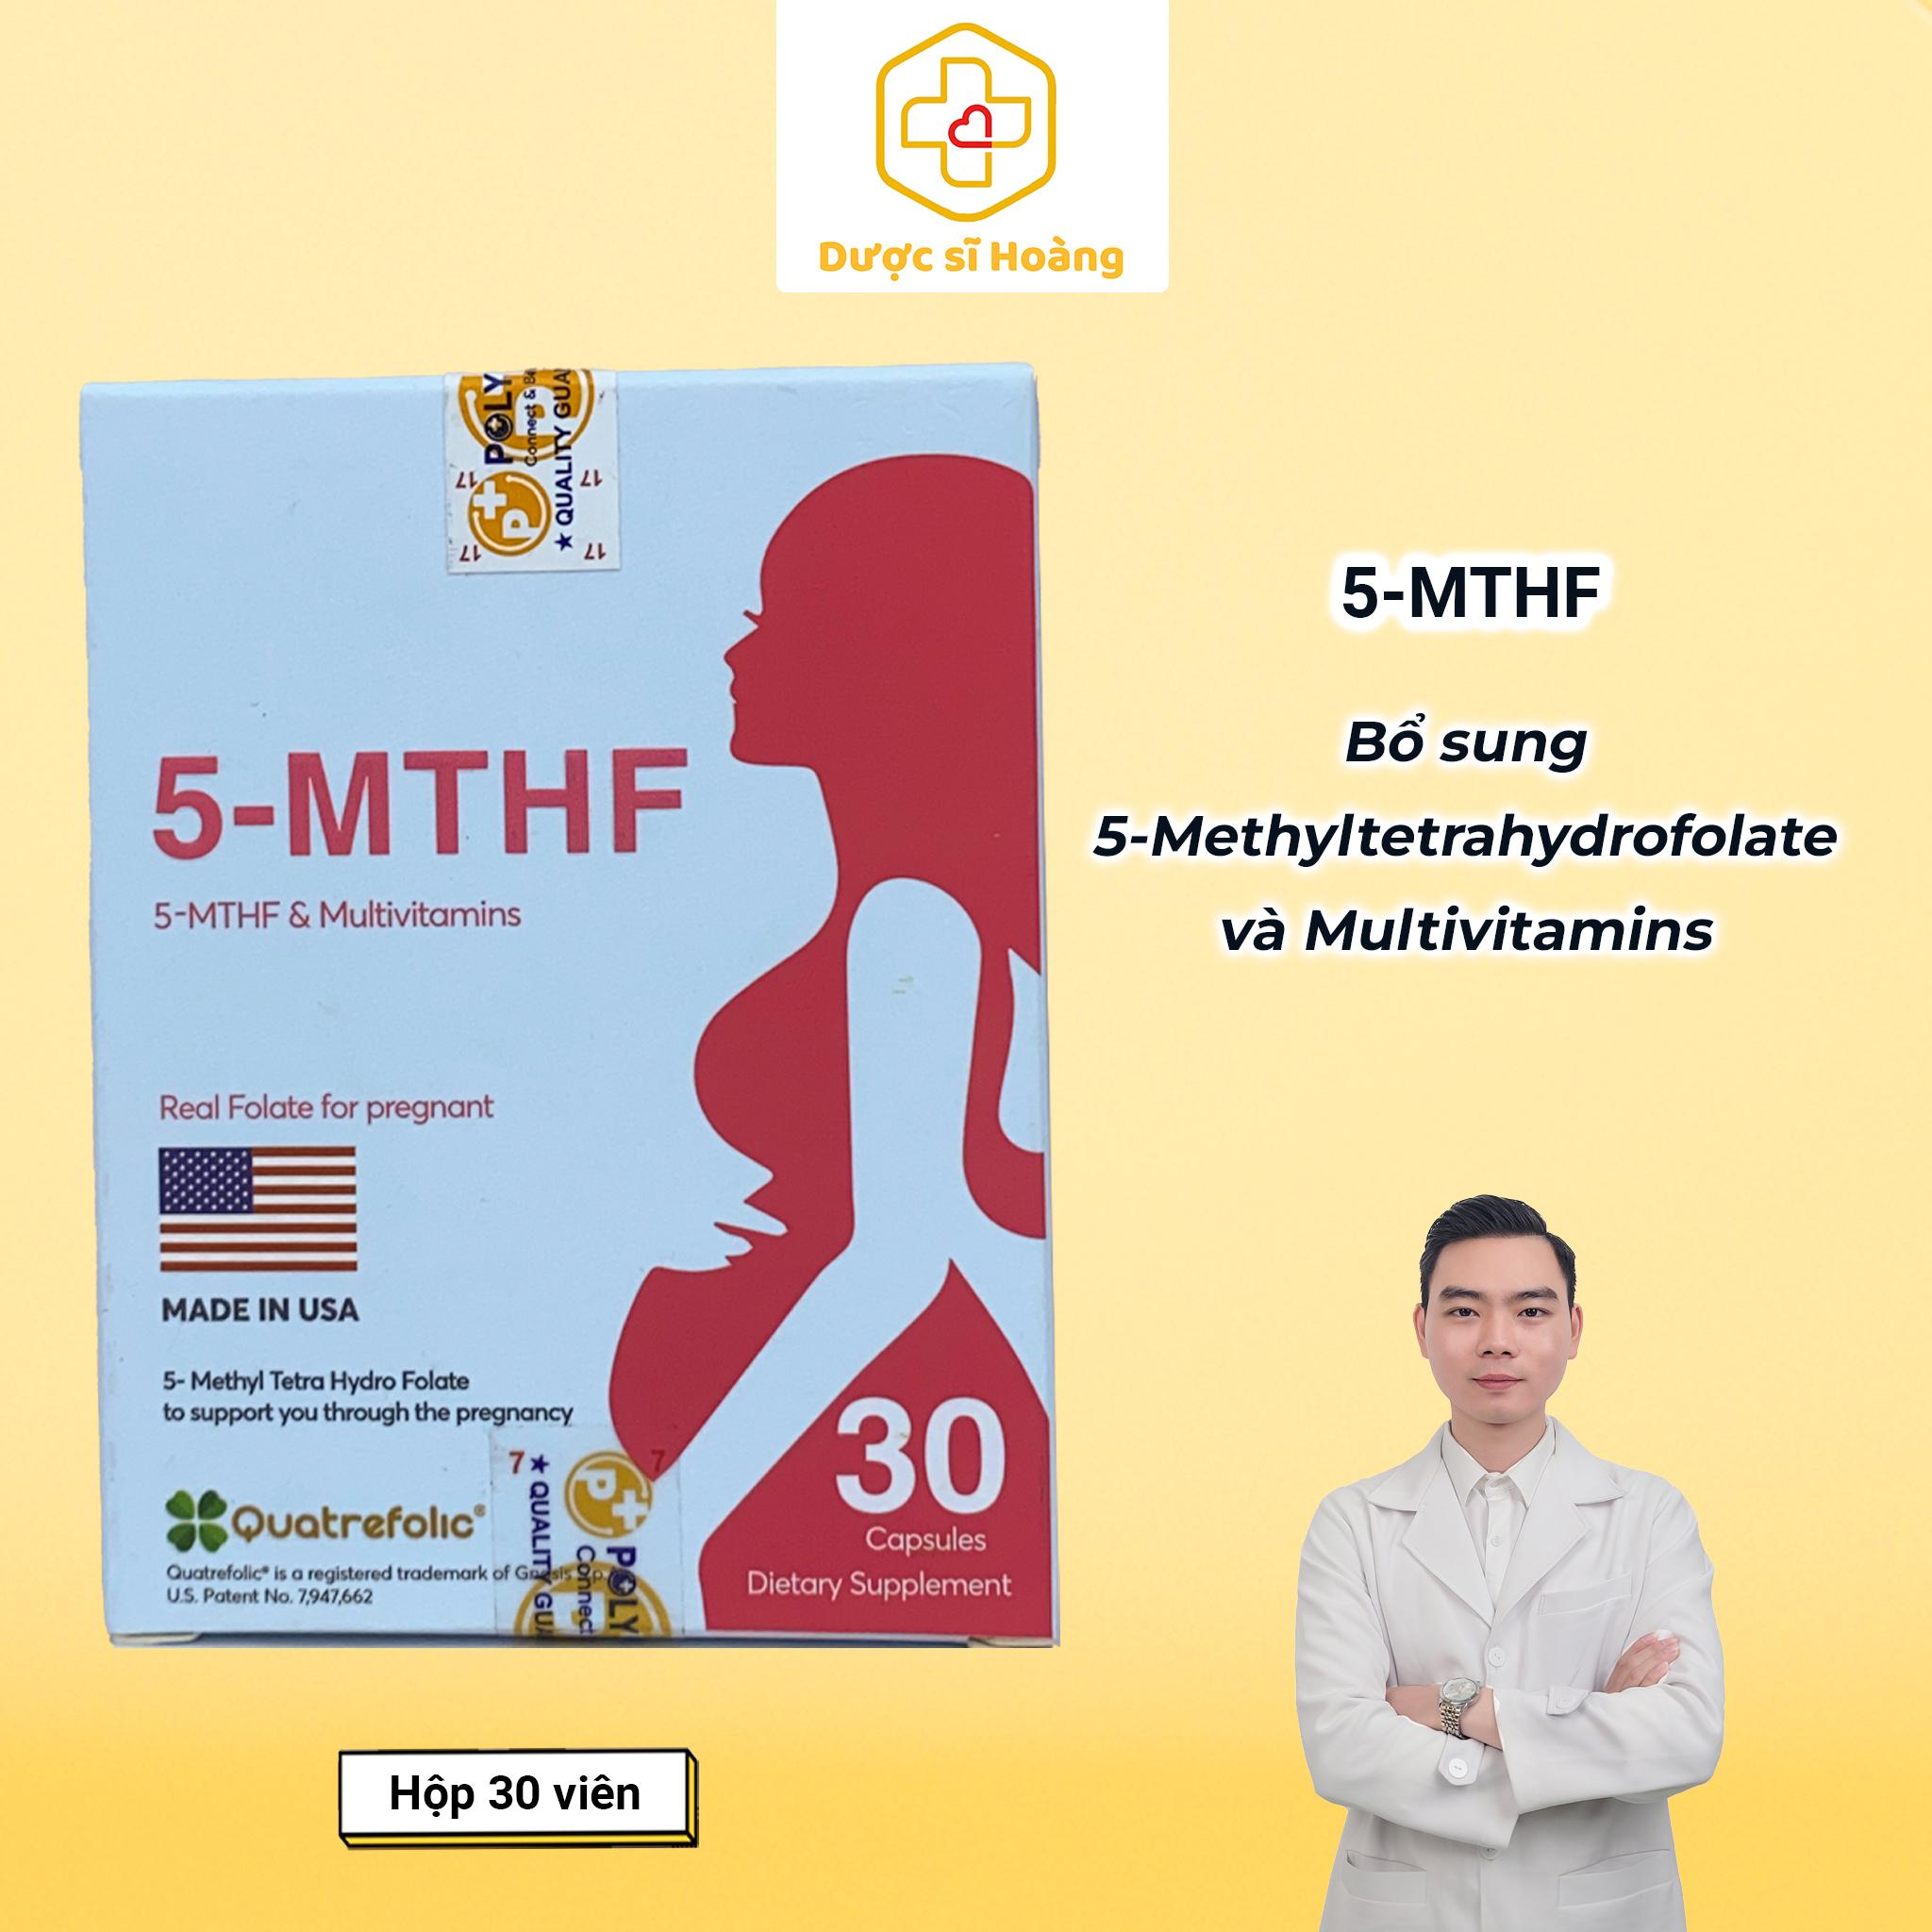 5-MTHF hộp 30 viên - thực phẩm bổ sung 5-Methyltetrahydrofolate cho Phụ nữ Rối loạn chuyển hóa acid folic, có dự định sinh con, phụ nữ trong thai kỳ (Nhập khẩu chính hãng)